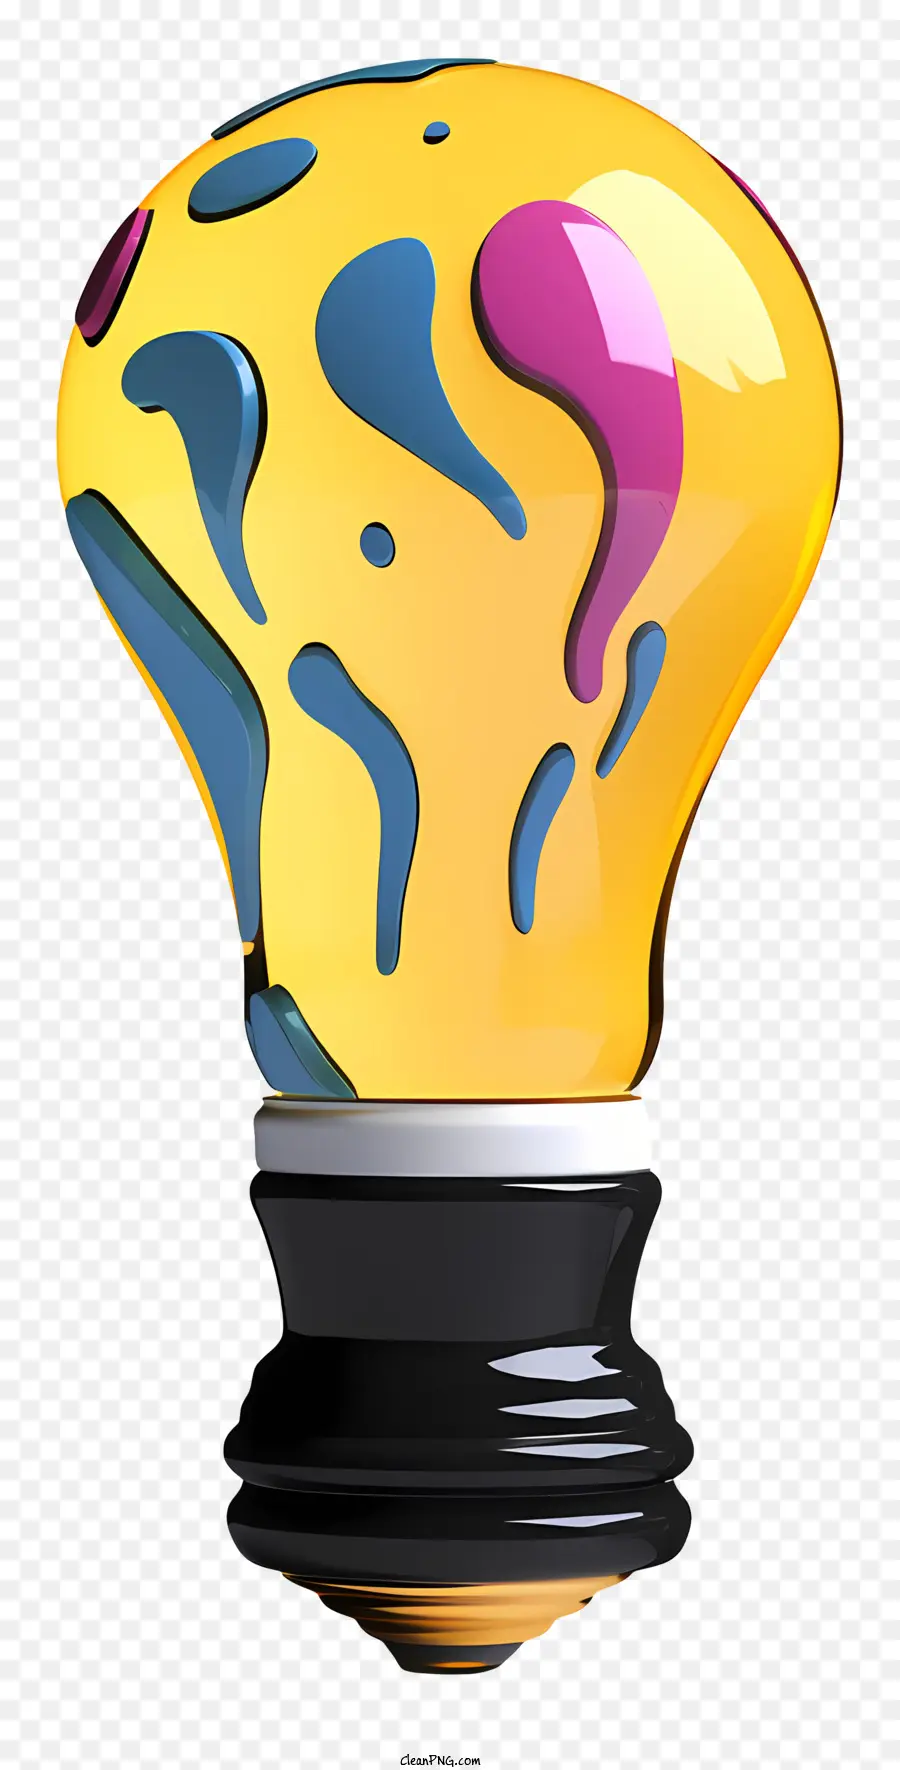 bóng đèn - Thiết kế splatter sơn đầy màu sắc trên bóng đèn màu vàng sáng